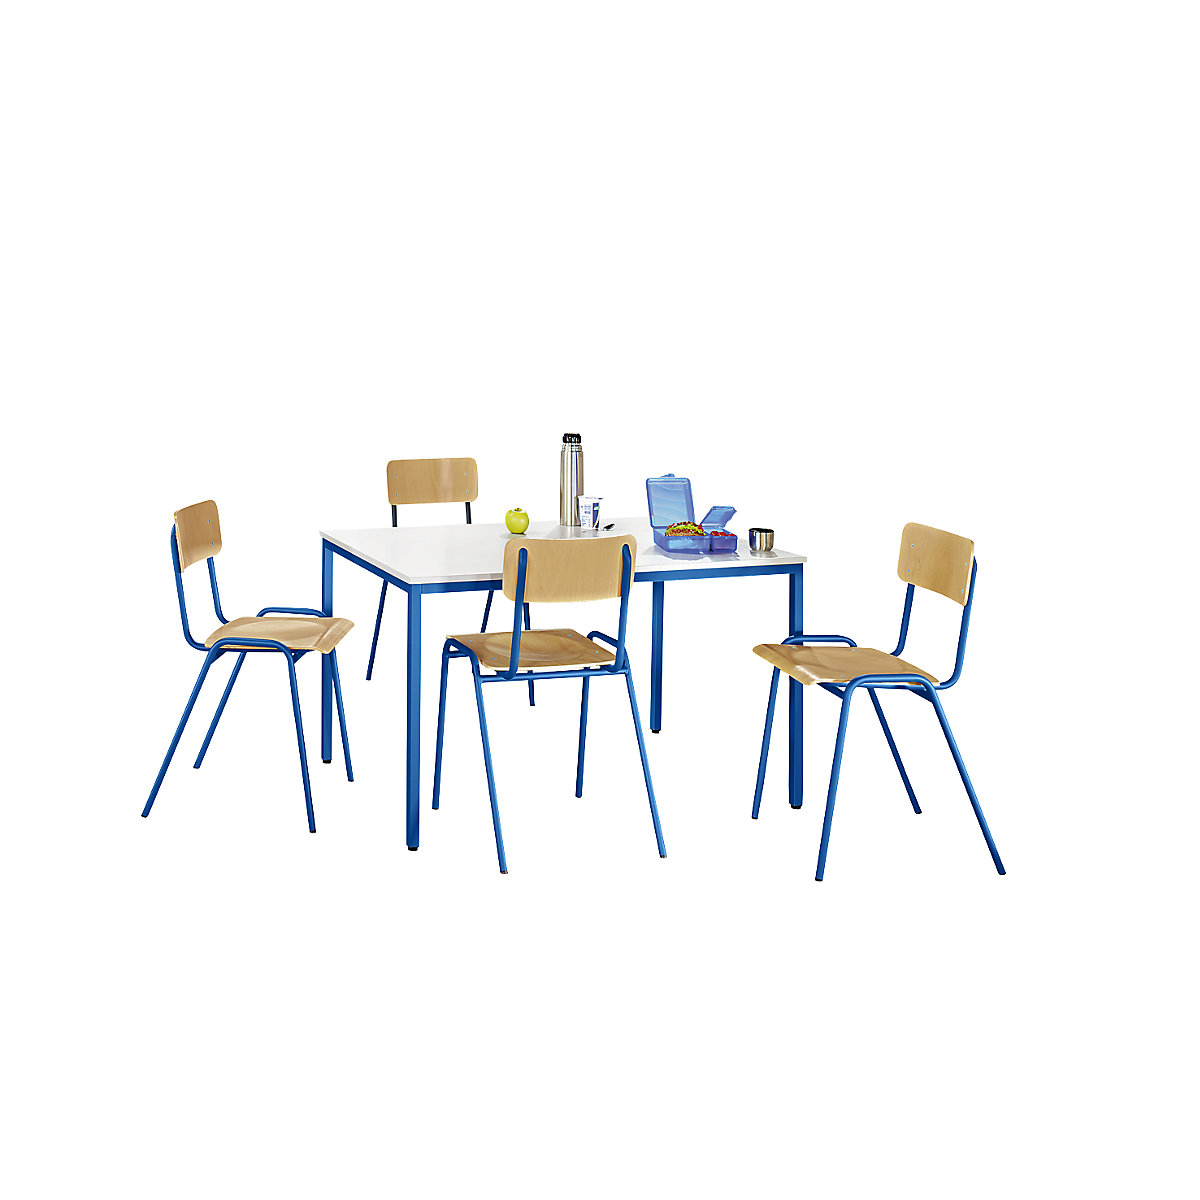 Mehrzweck-Sitzgruppe eurokraft basic, 1 Tisch, 4 Stühle, Tischplatte lichtgrau, Gestell enzianblau